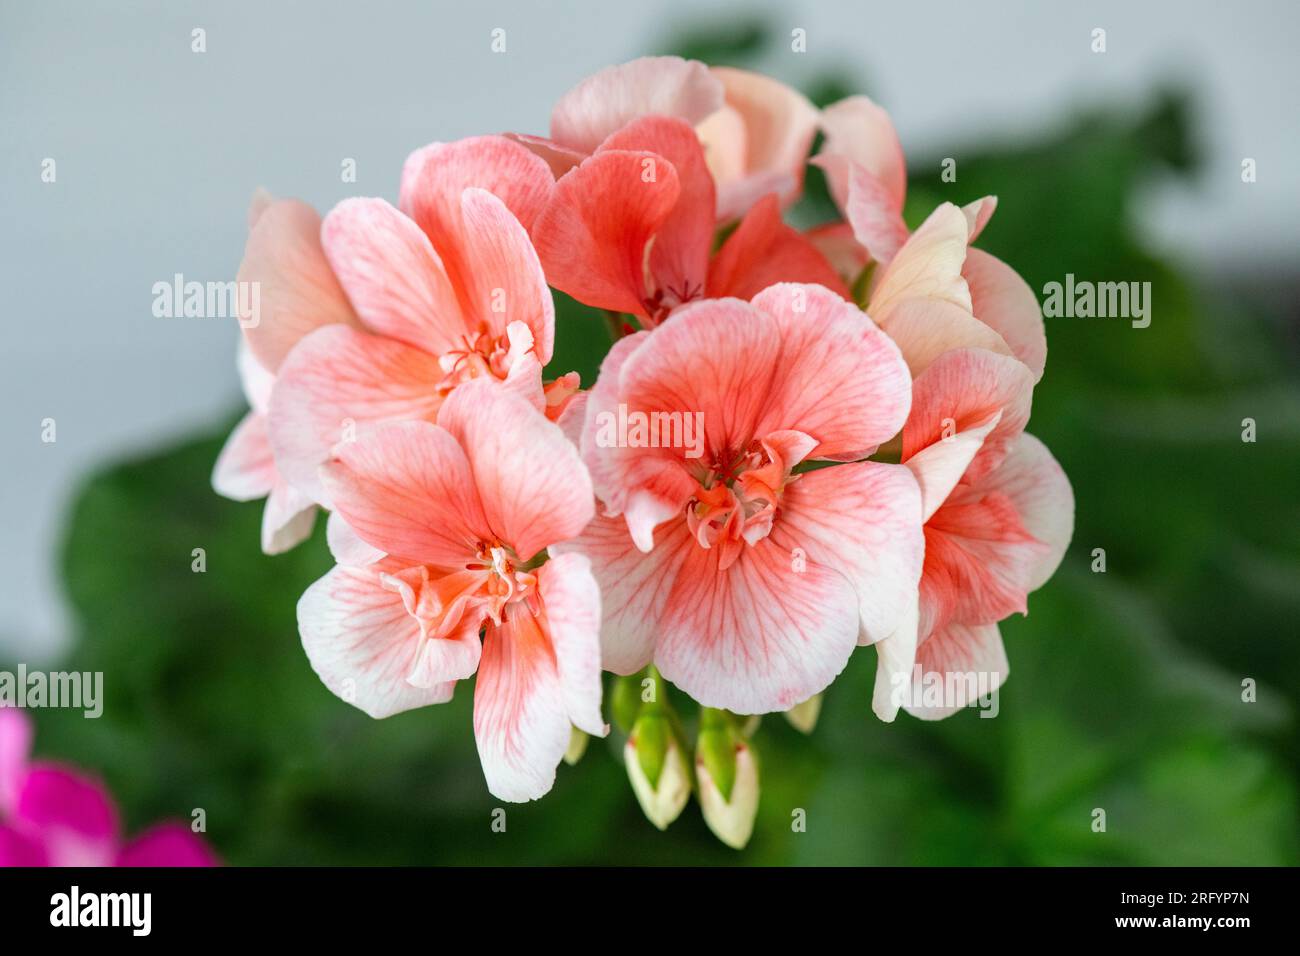 close-up image of Geranium, Pelargonium, Geranium, studio shot Stock Photo